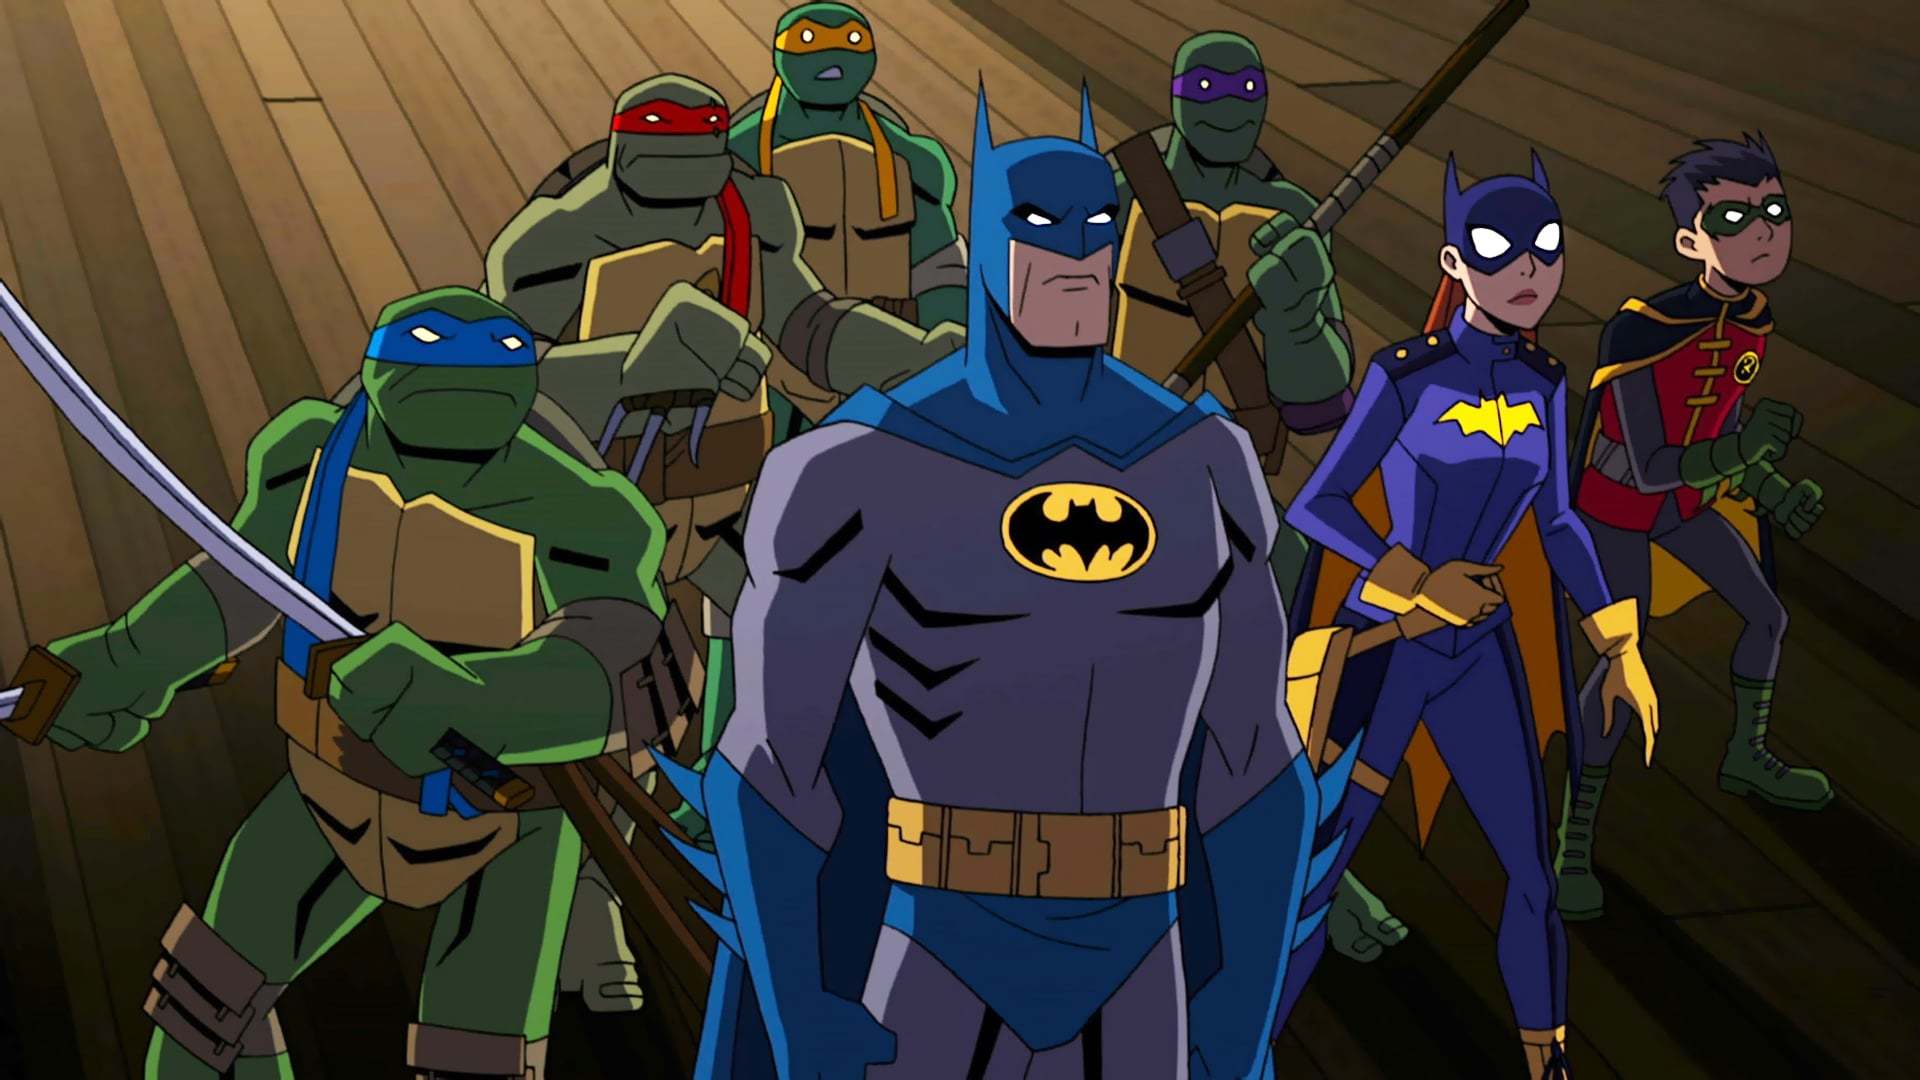 ბეტმენი თინეიჯერი მუტანტი კუ-ნინძების წინააღმდეგ / Batman vs Teenage Mutant Ninja Turtles